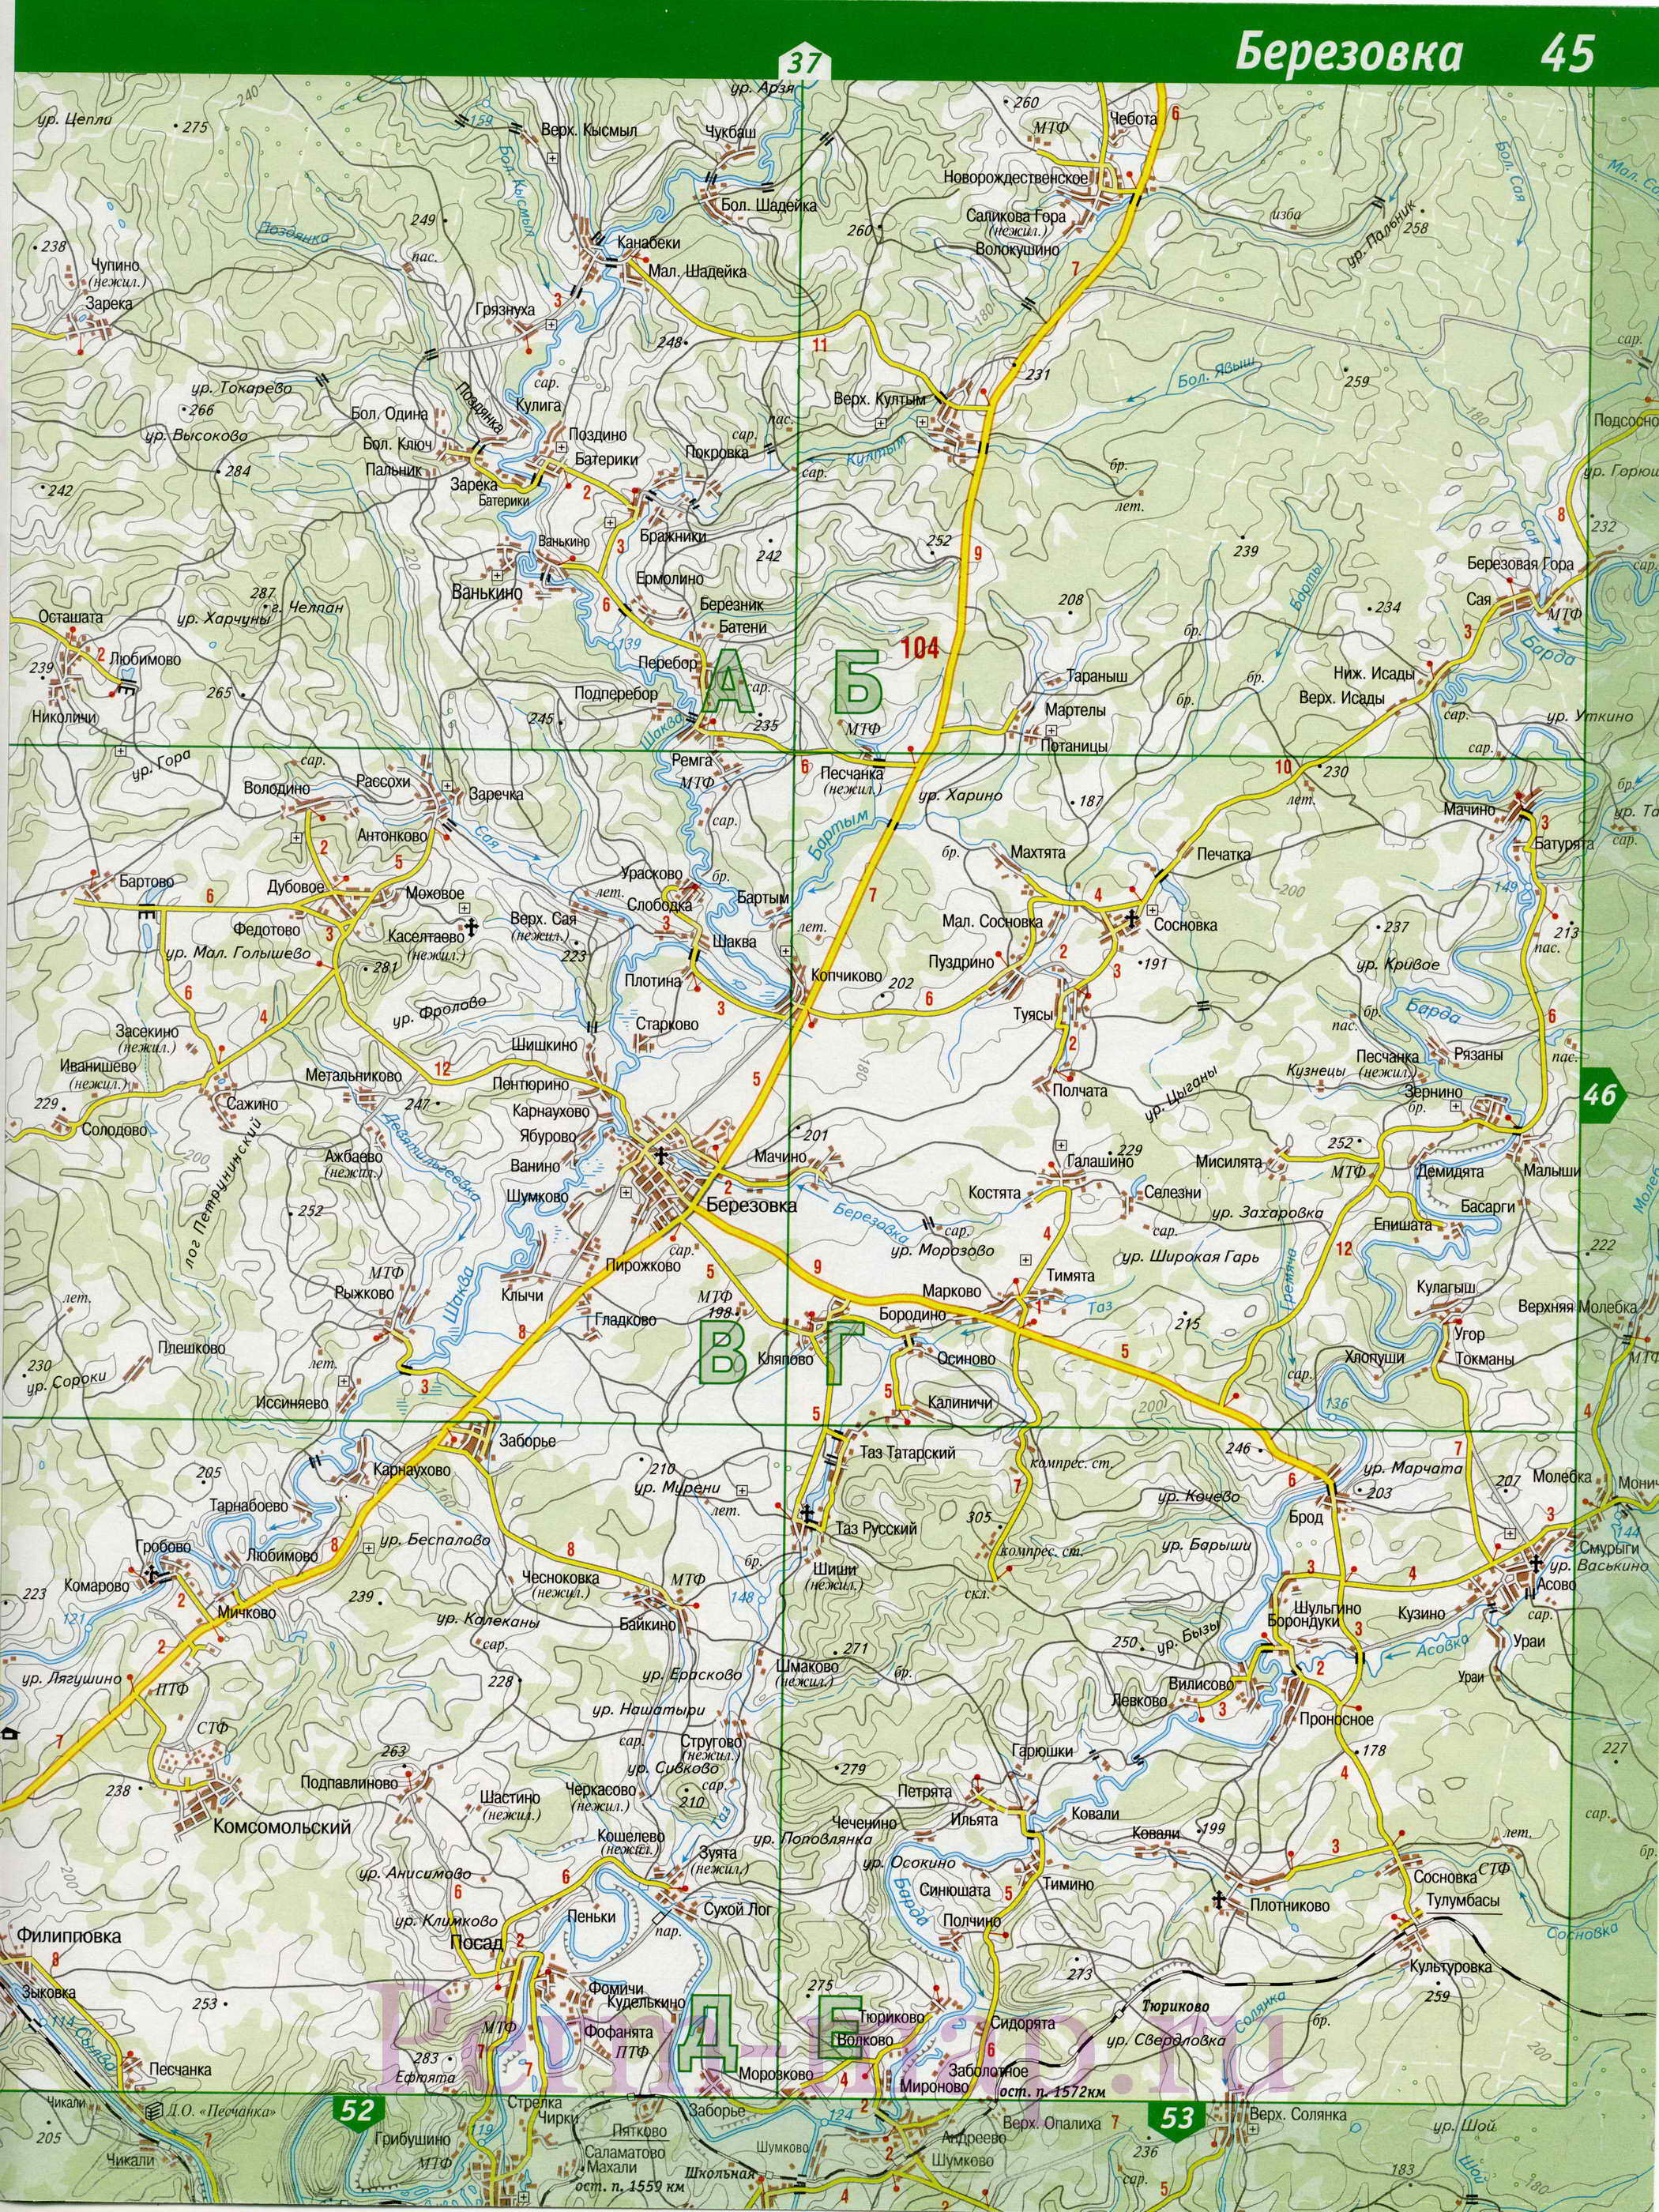 Лысьвенский район - топографическая карта. Подробная крупномасштабная карта Лысьвенского района, A1 - 